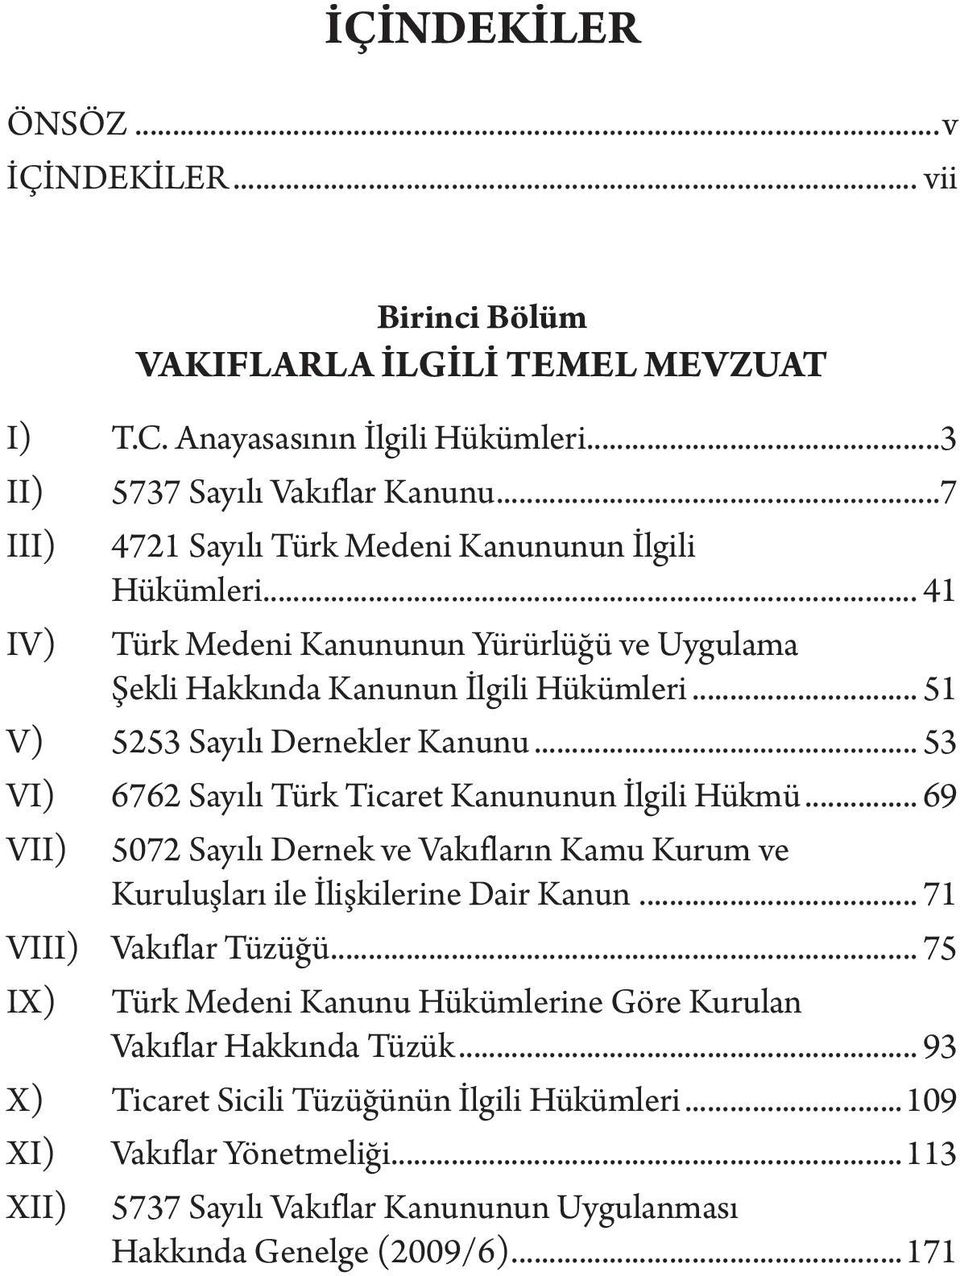 .. 53 VI) 6762 Sayılı Türk Ticaret Kanununun İlgili Hükmü... 69 V 5072 Sayılı Dernek ve Vakıfların Kamu Kurum ve Kuruluşları ile İlişkilerine Dair Kanun... 71 VI Vakıflar Tüzüğü.